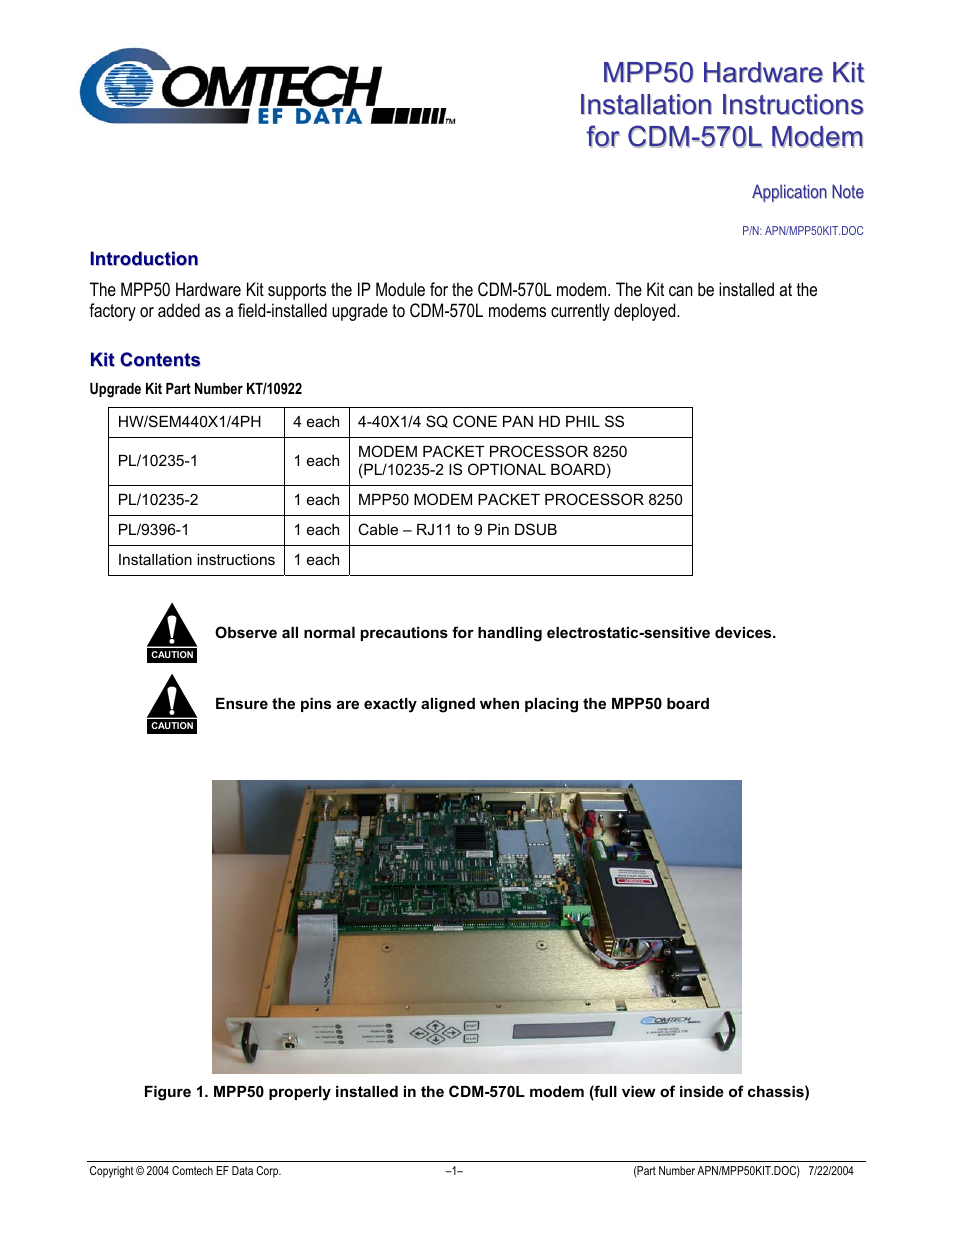 MPP50 Hardware Kit for CDM-570L